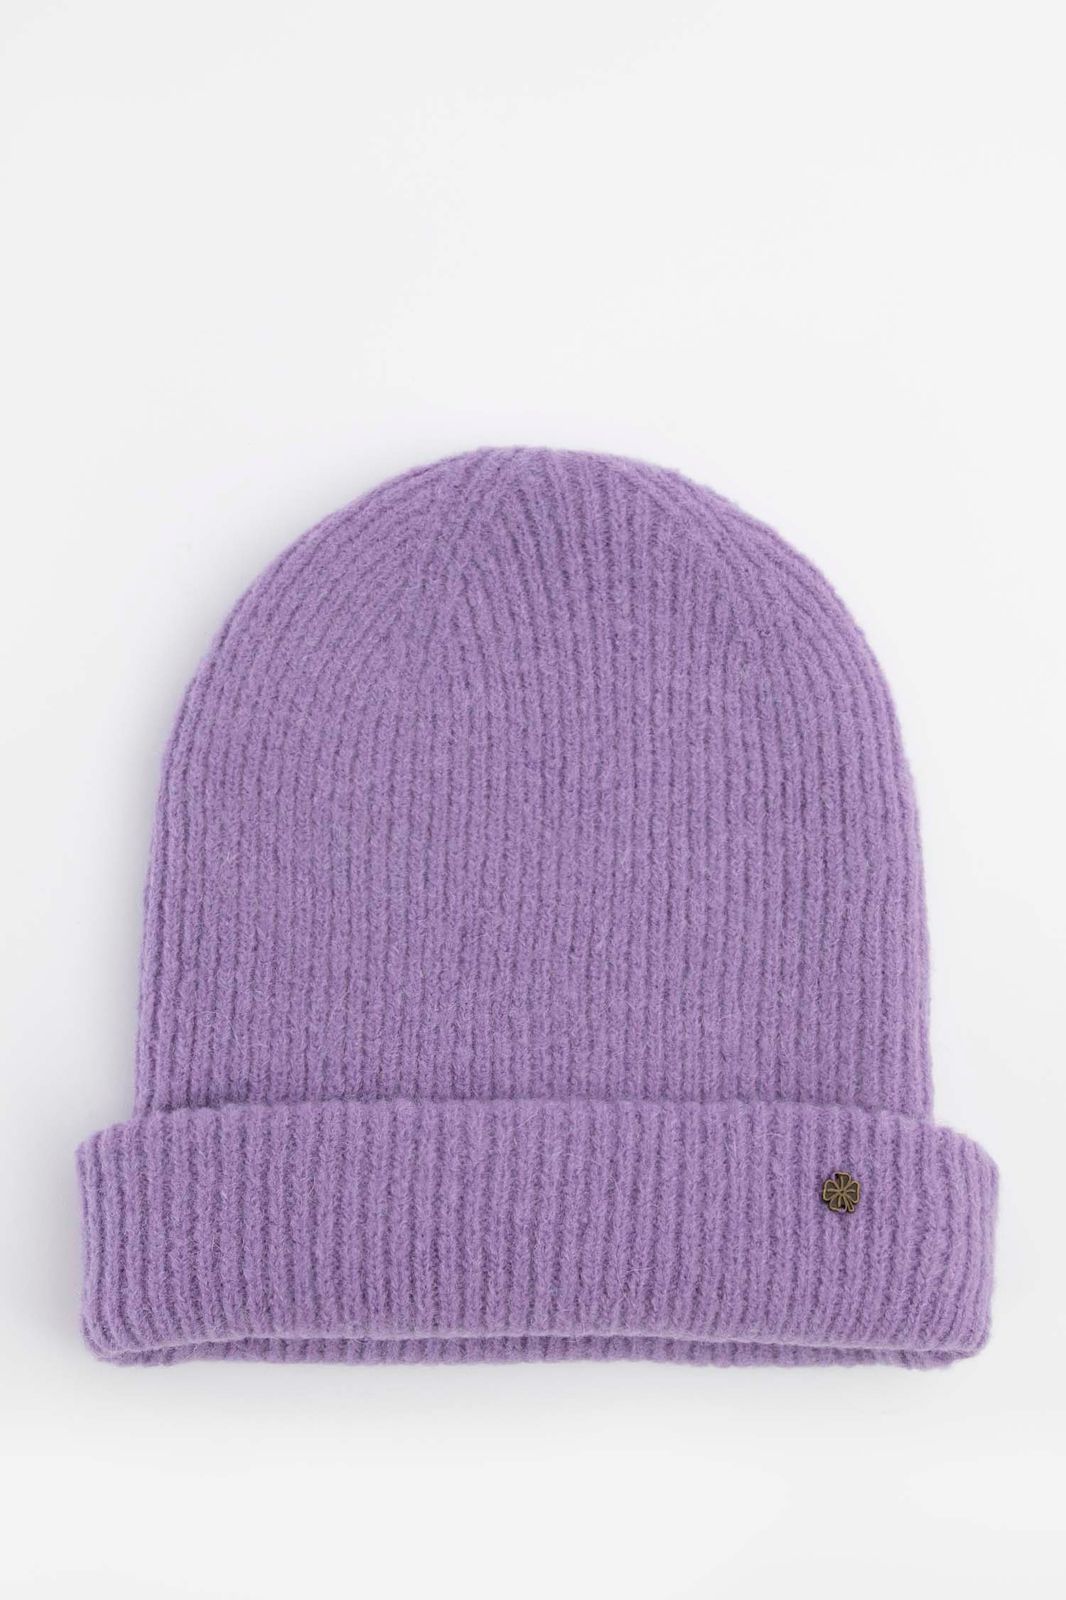 Bonnet tricoté - violet